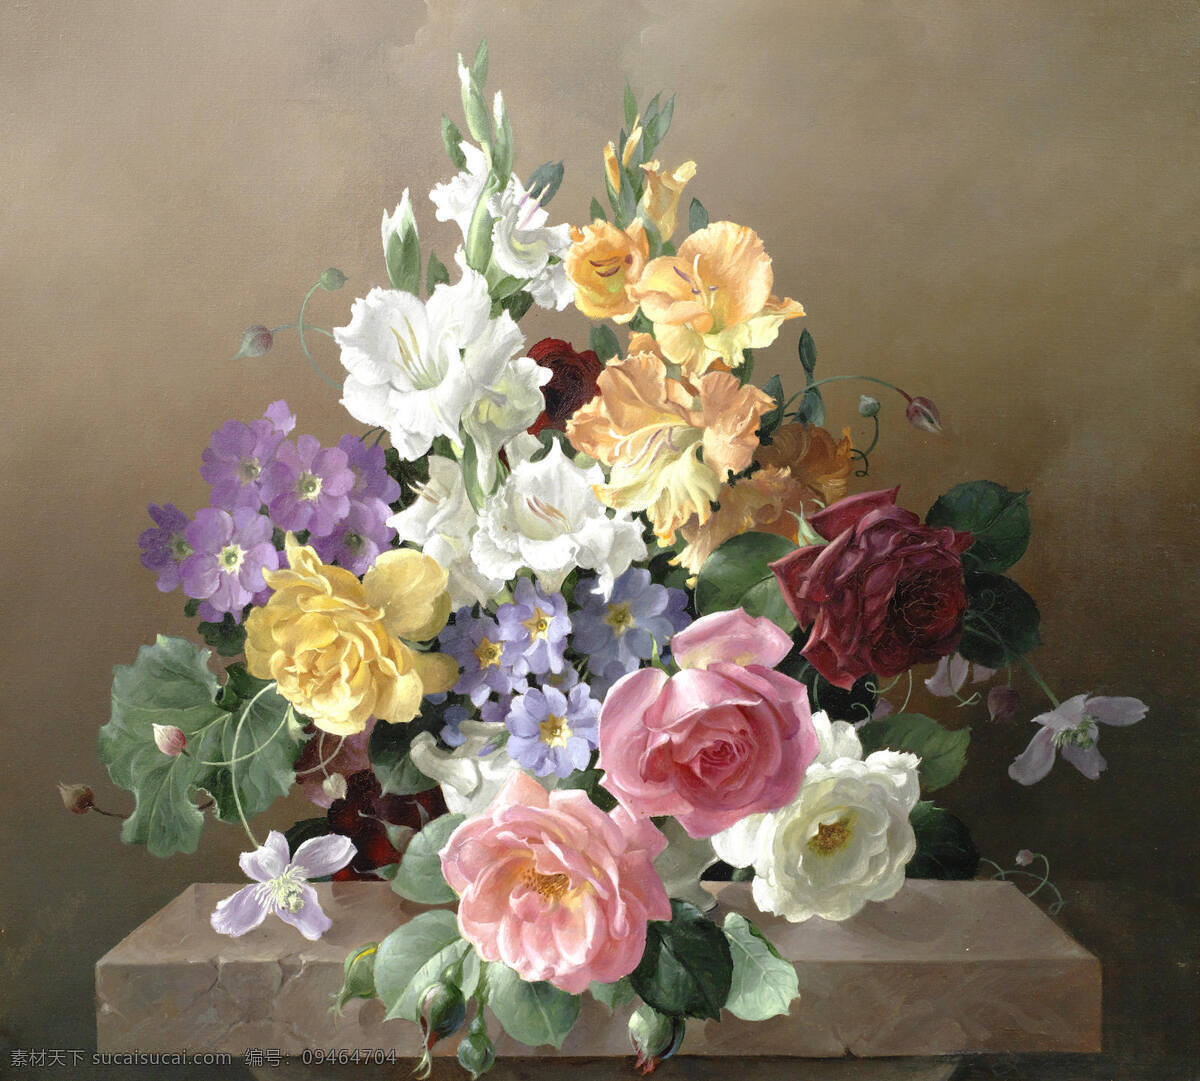 哈罗德 克莱顿 作品 英国画家 混搭鲜花 玫瑰 蜀葵 石台 20世纪油画 油画 文化艺术 绘画书法